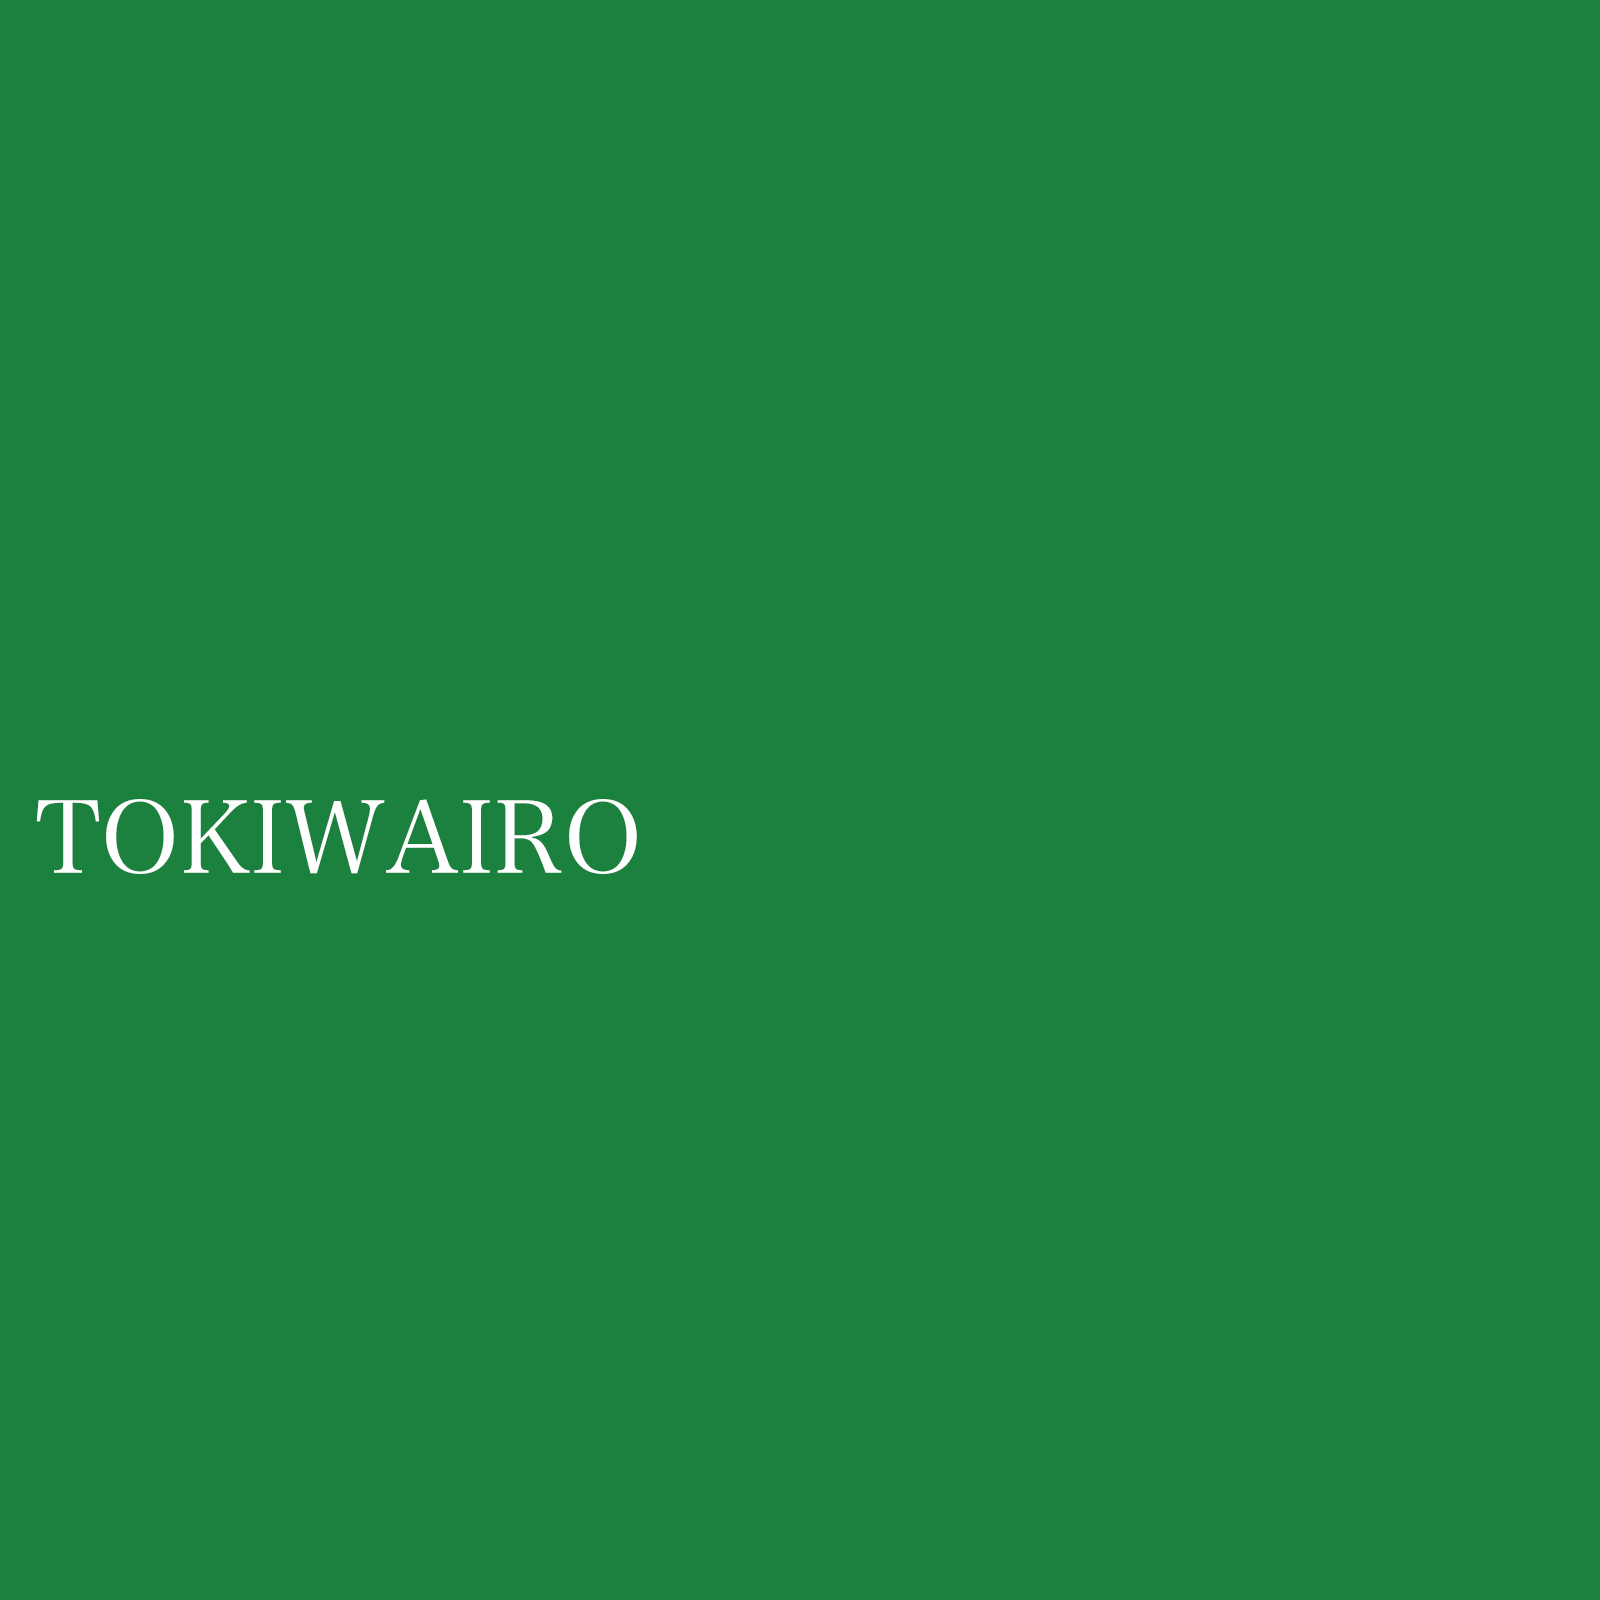 tokiwairo.jpg